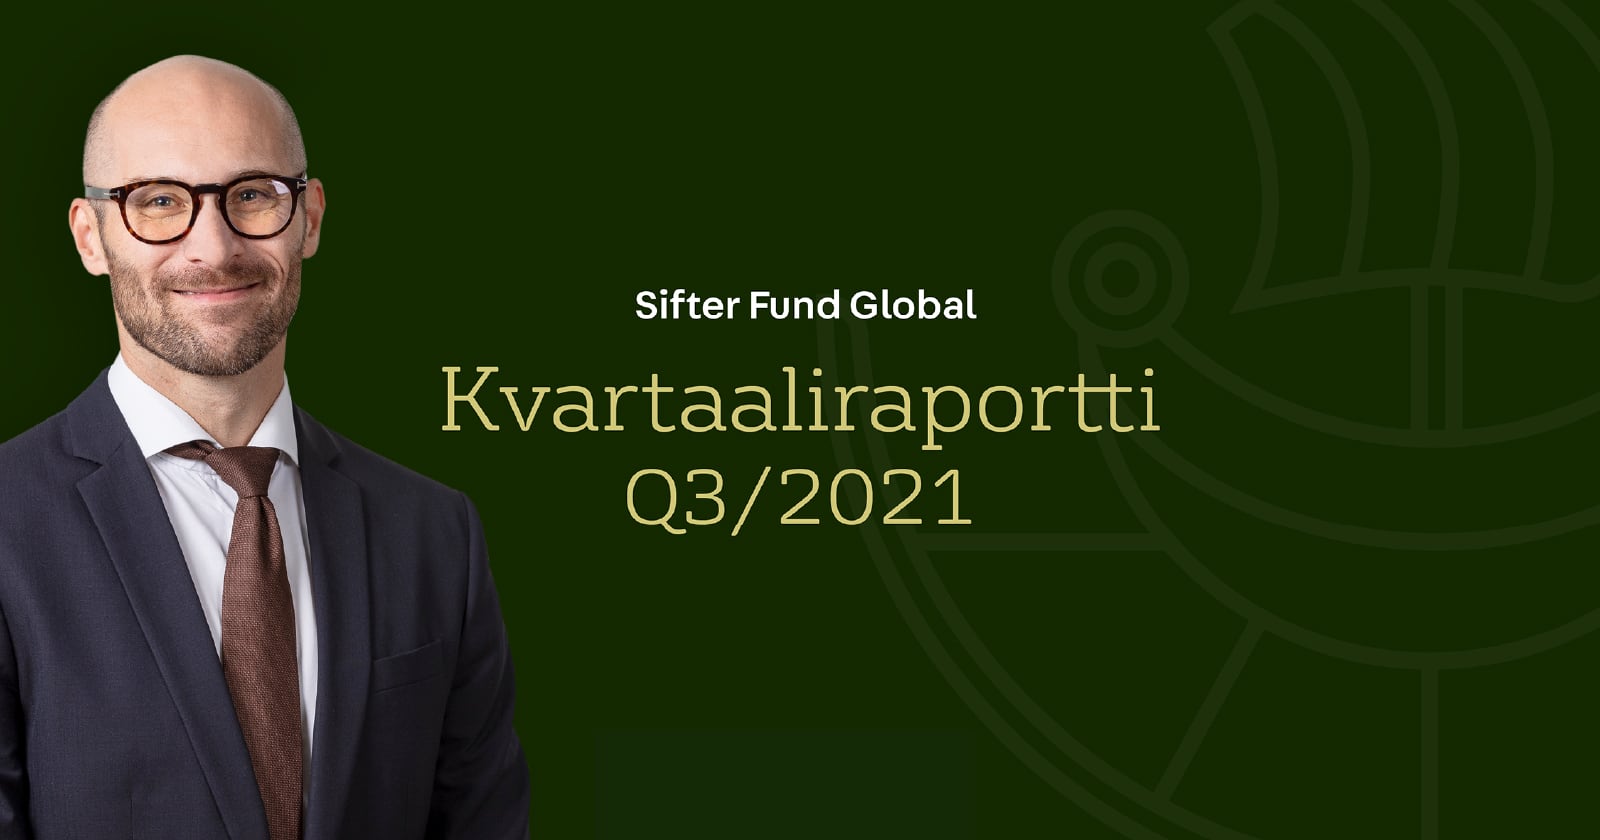 Sifter Fund Global kvartaaliraportti Q3/2021